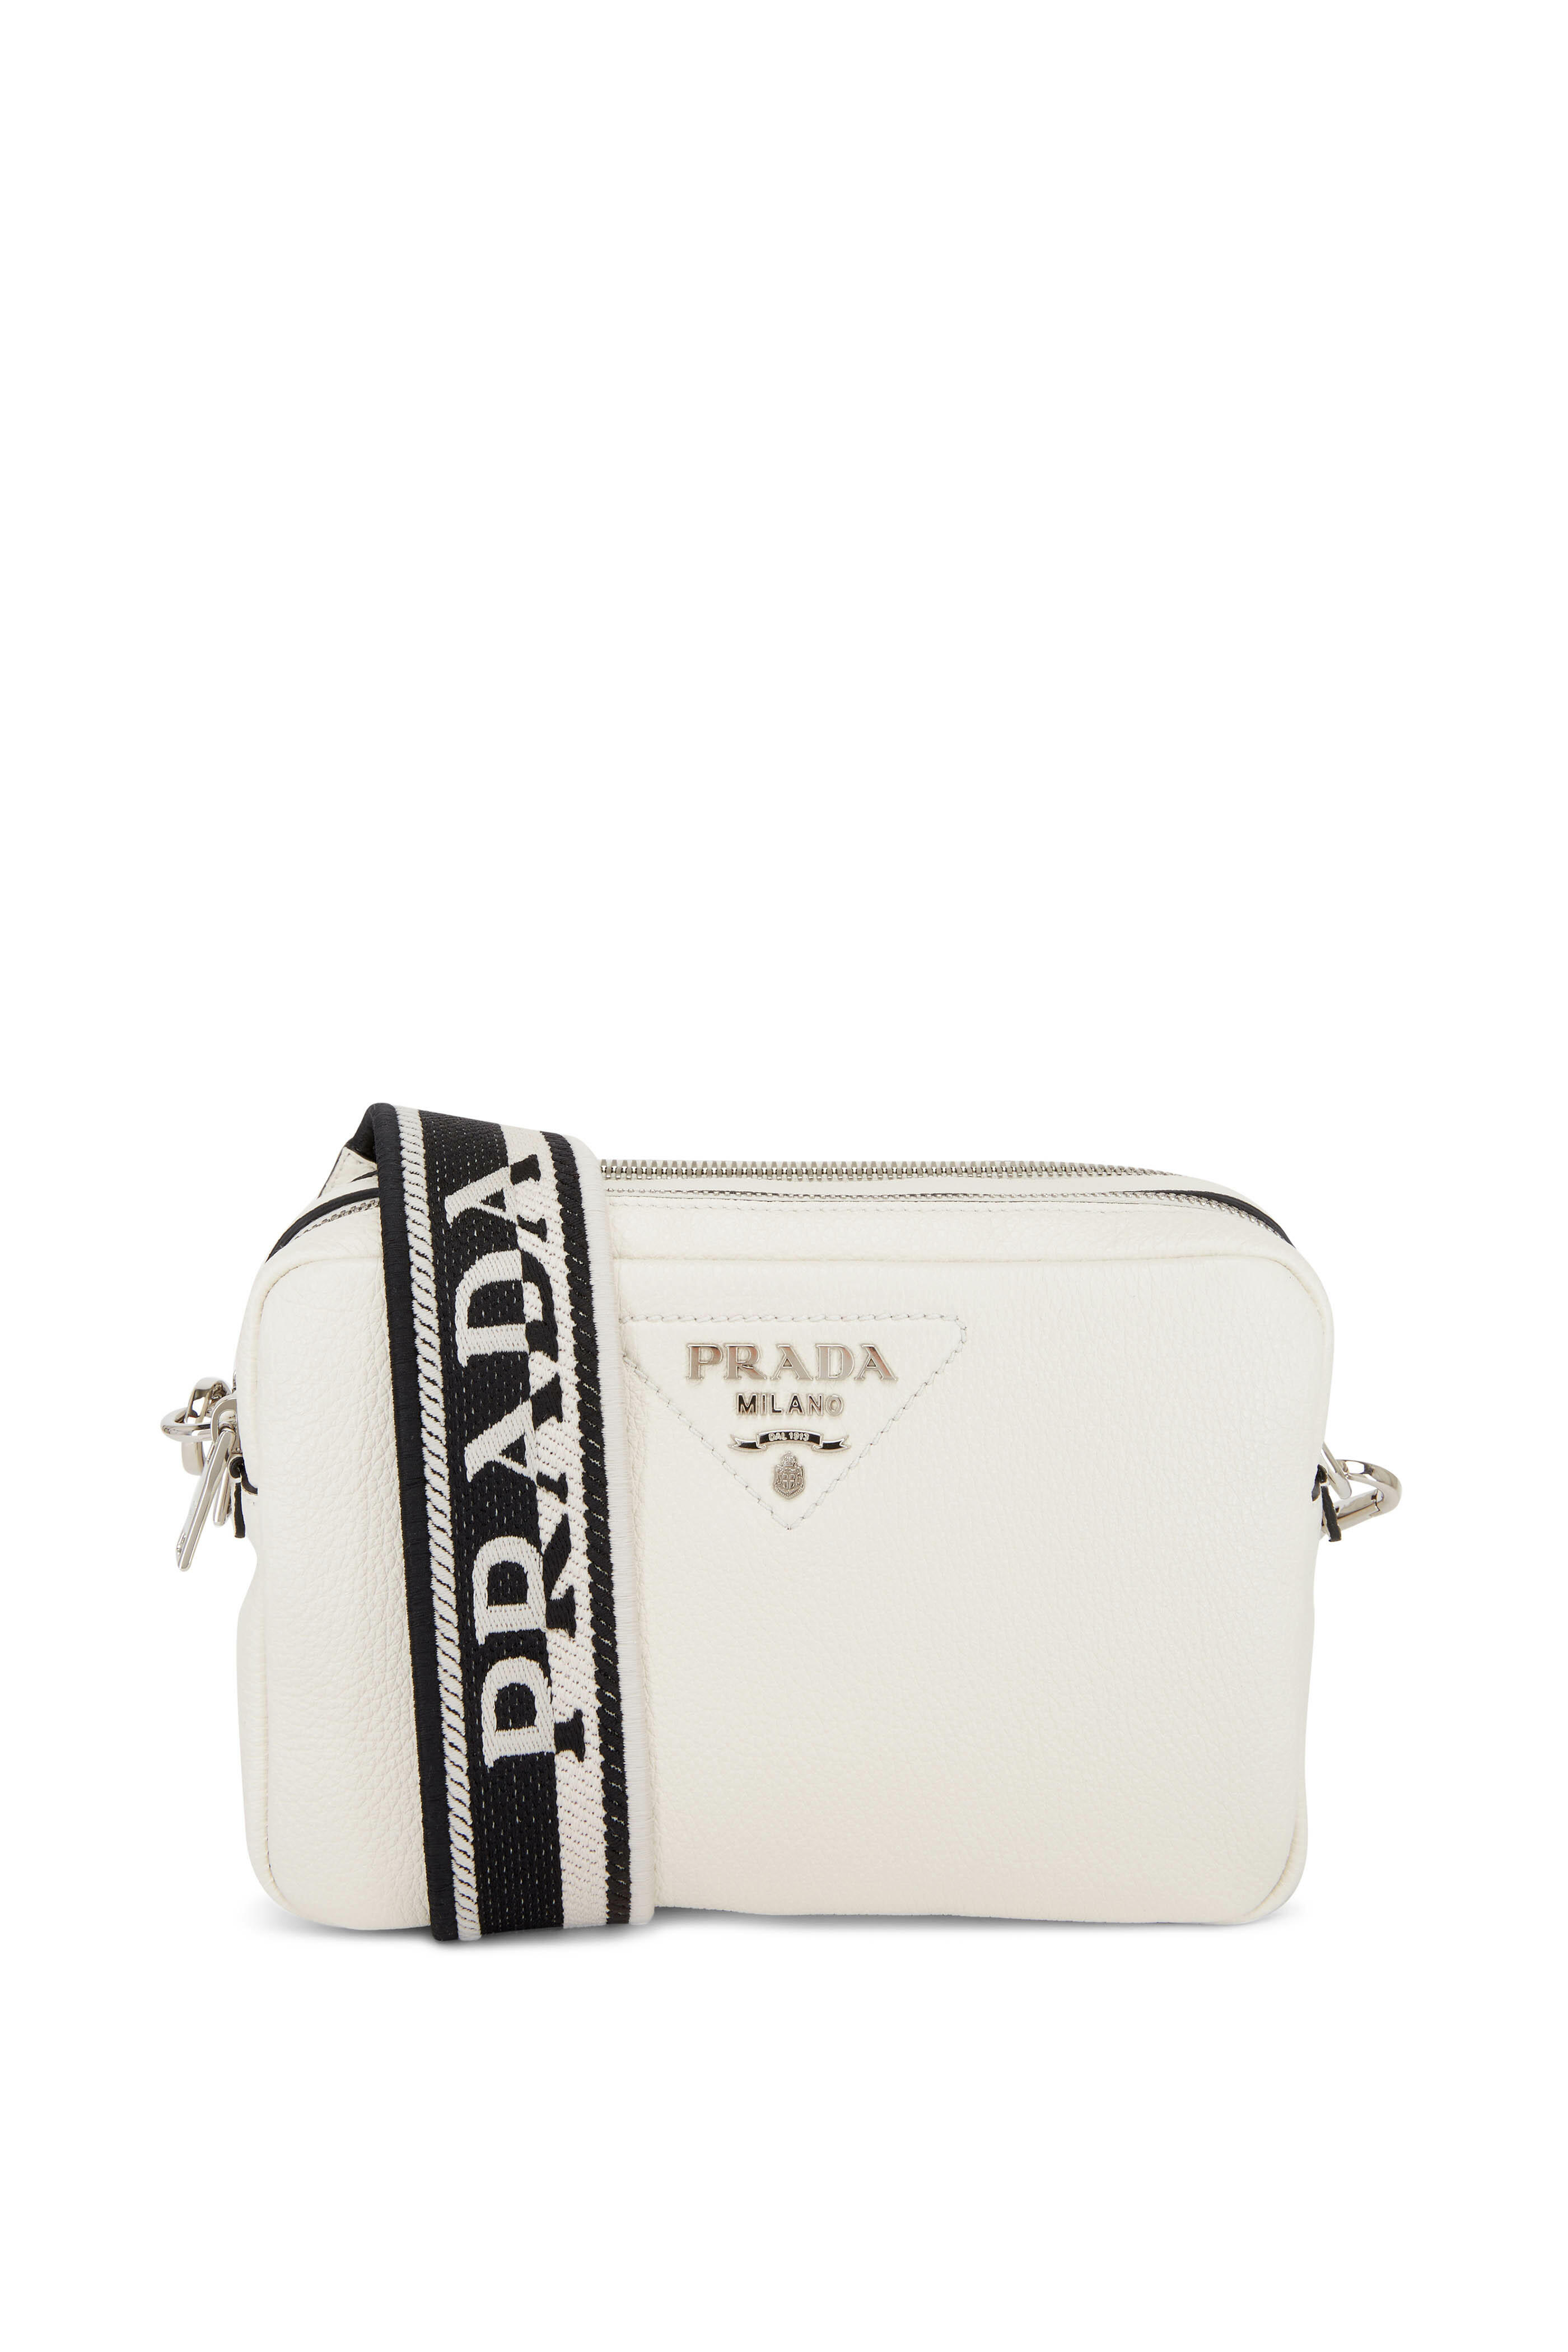 Prada Saffiano Leather Camera Bag in White